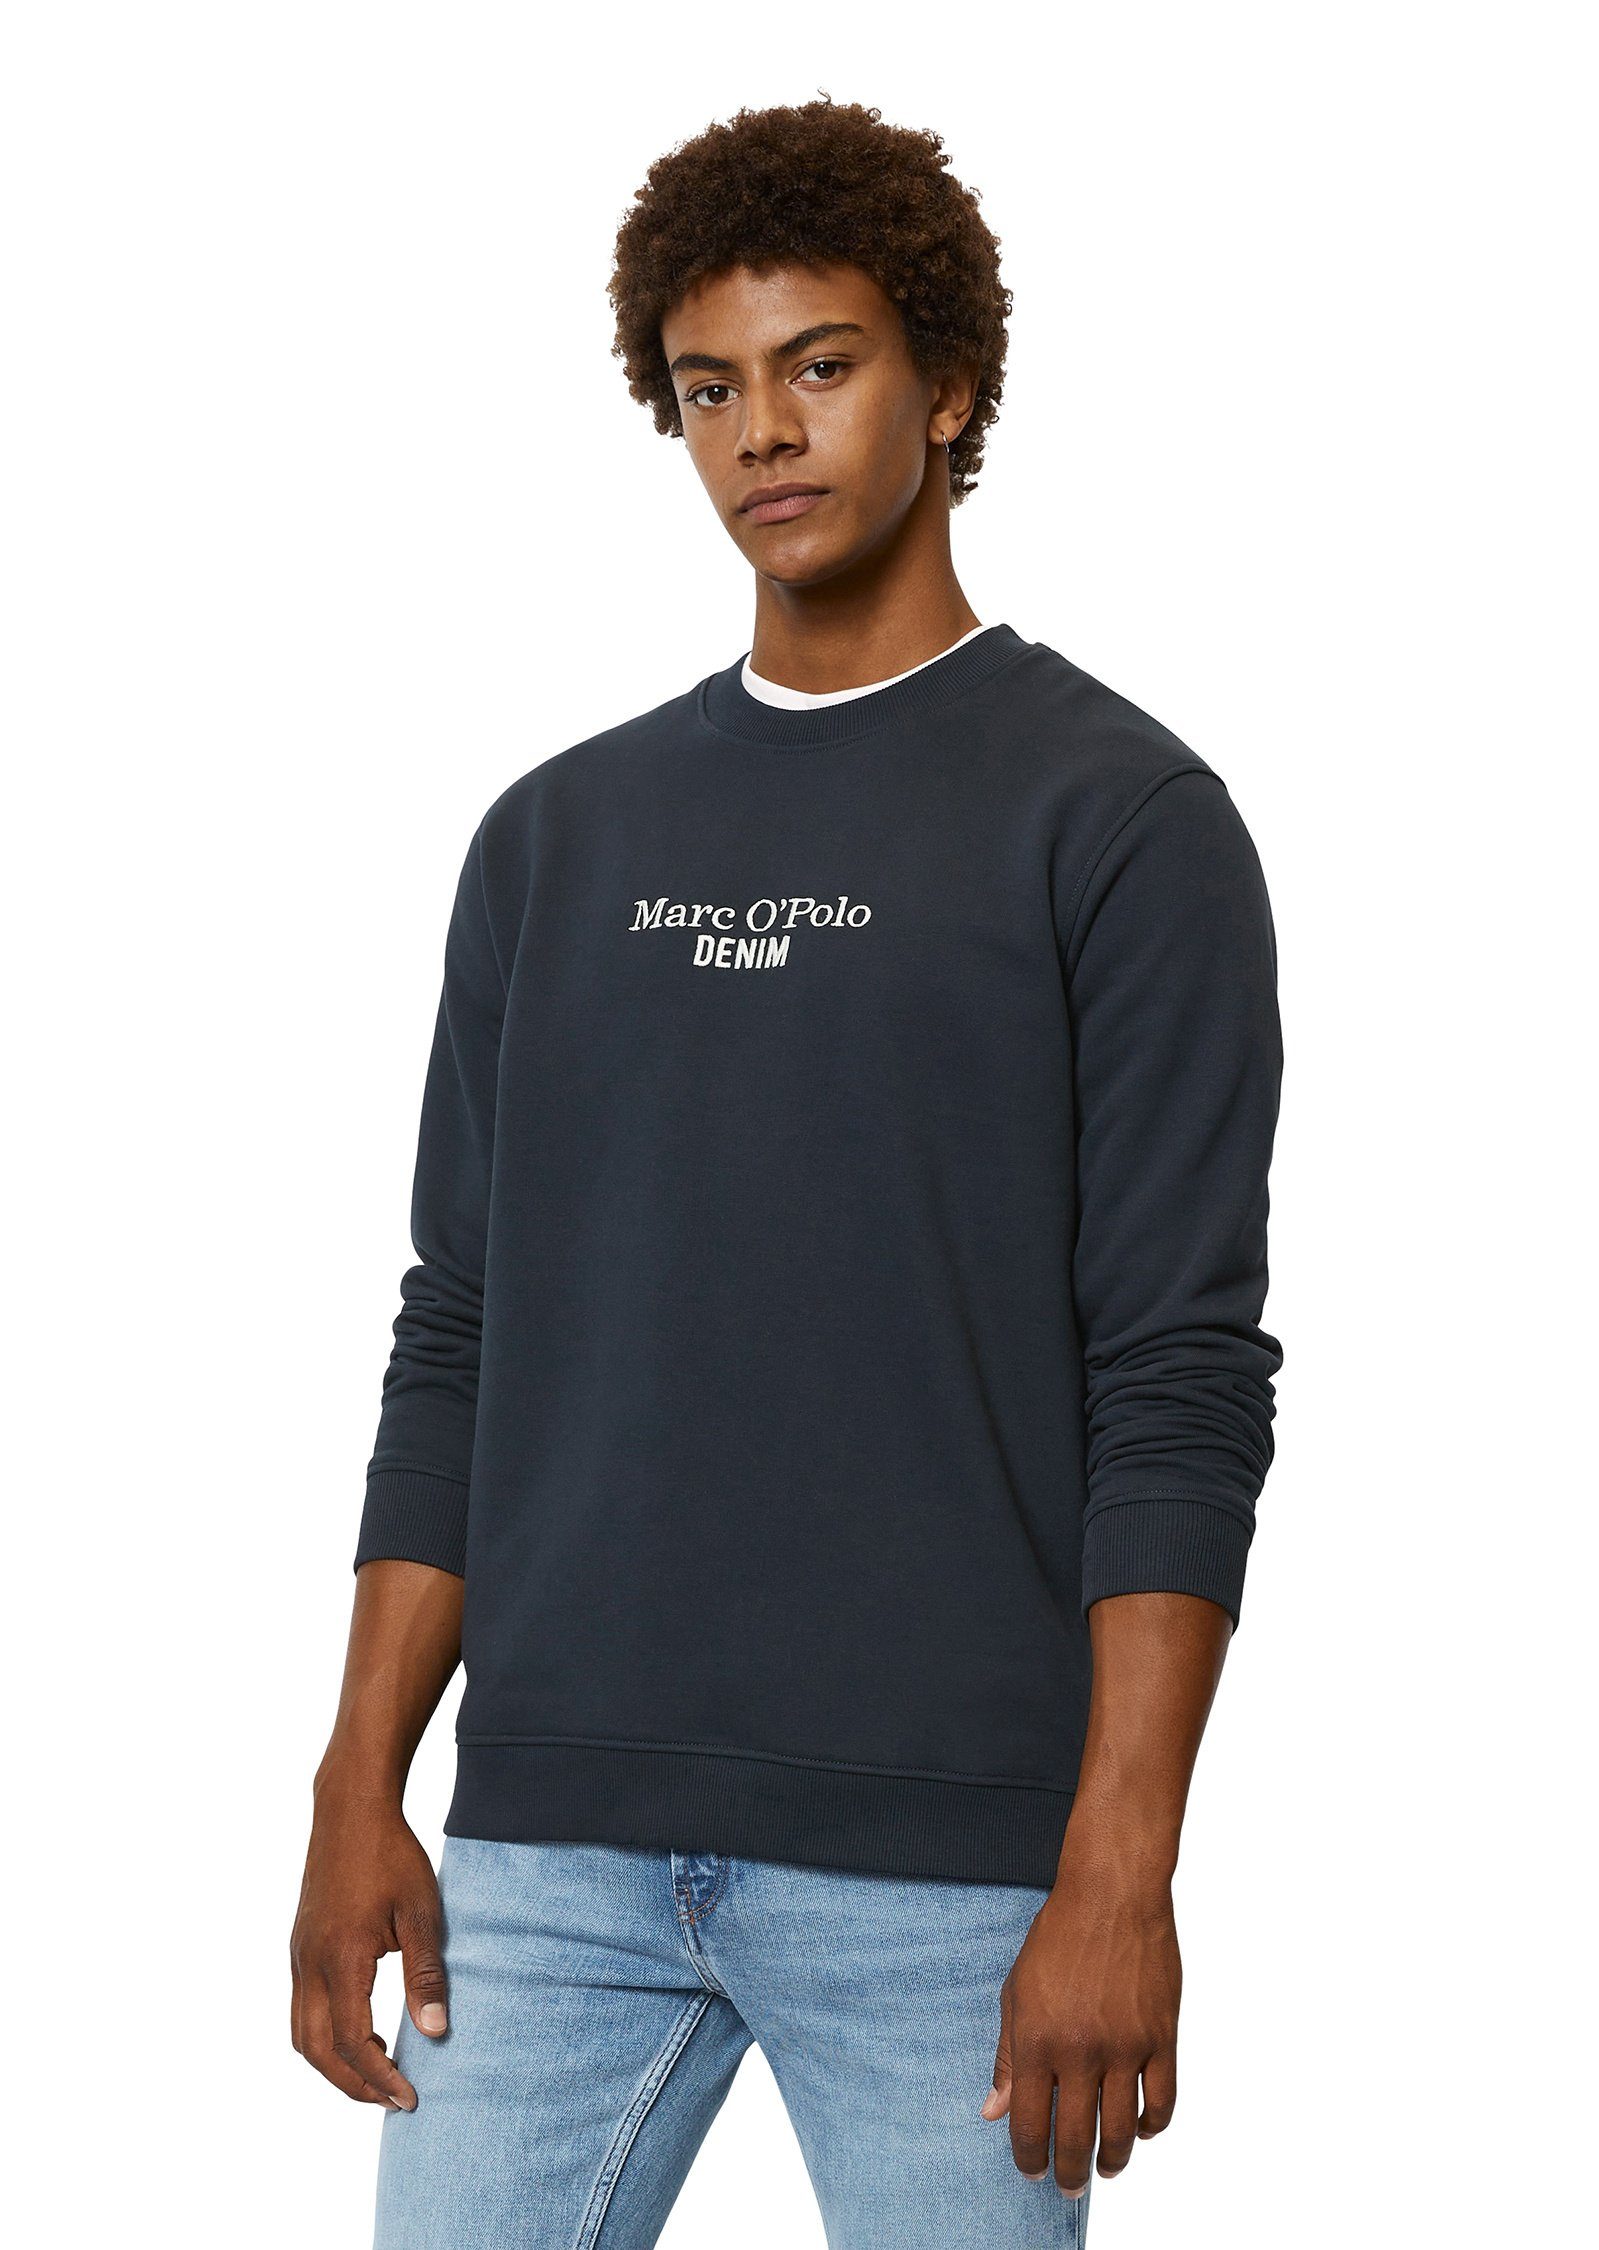 Marc O'Polo DENIM Sweatshirt mit Brust-Logo blau